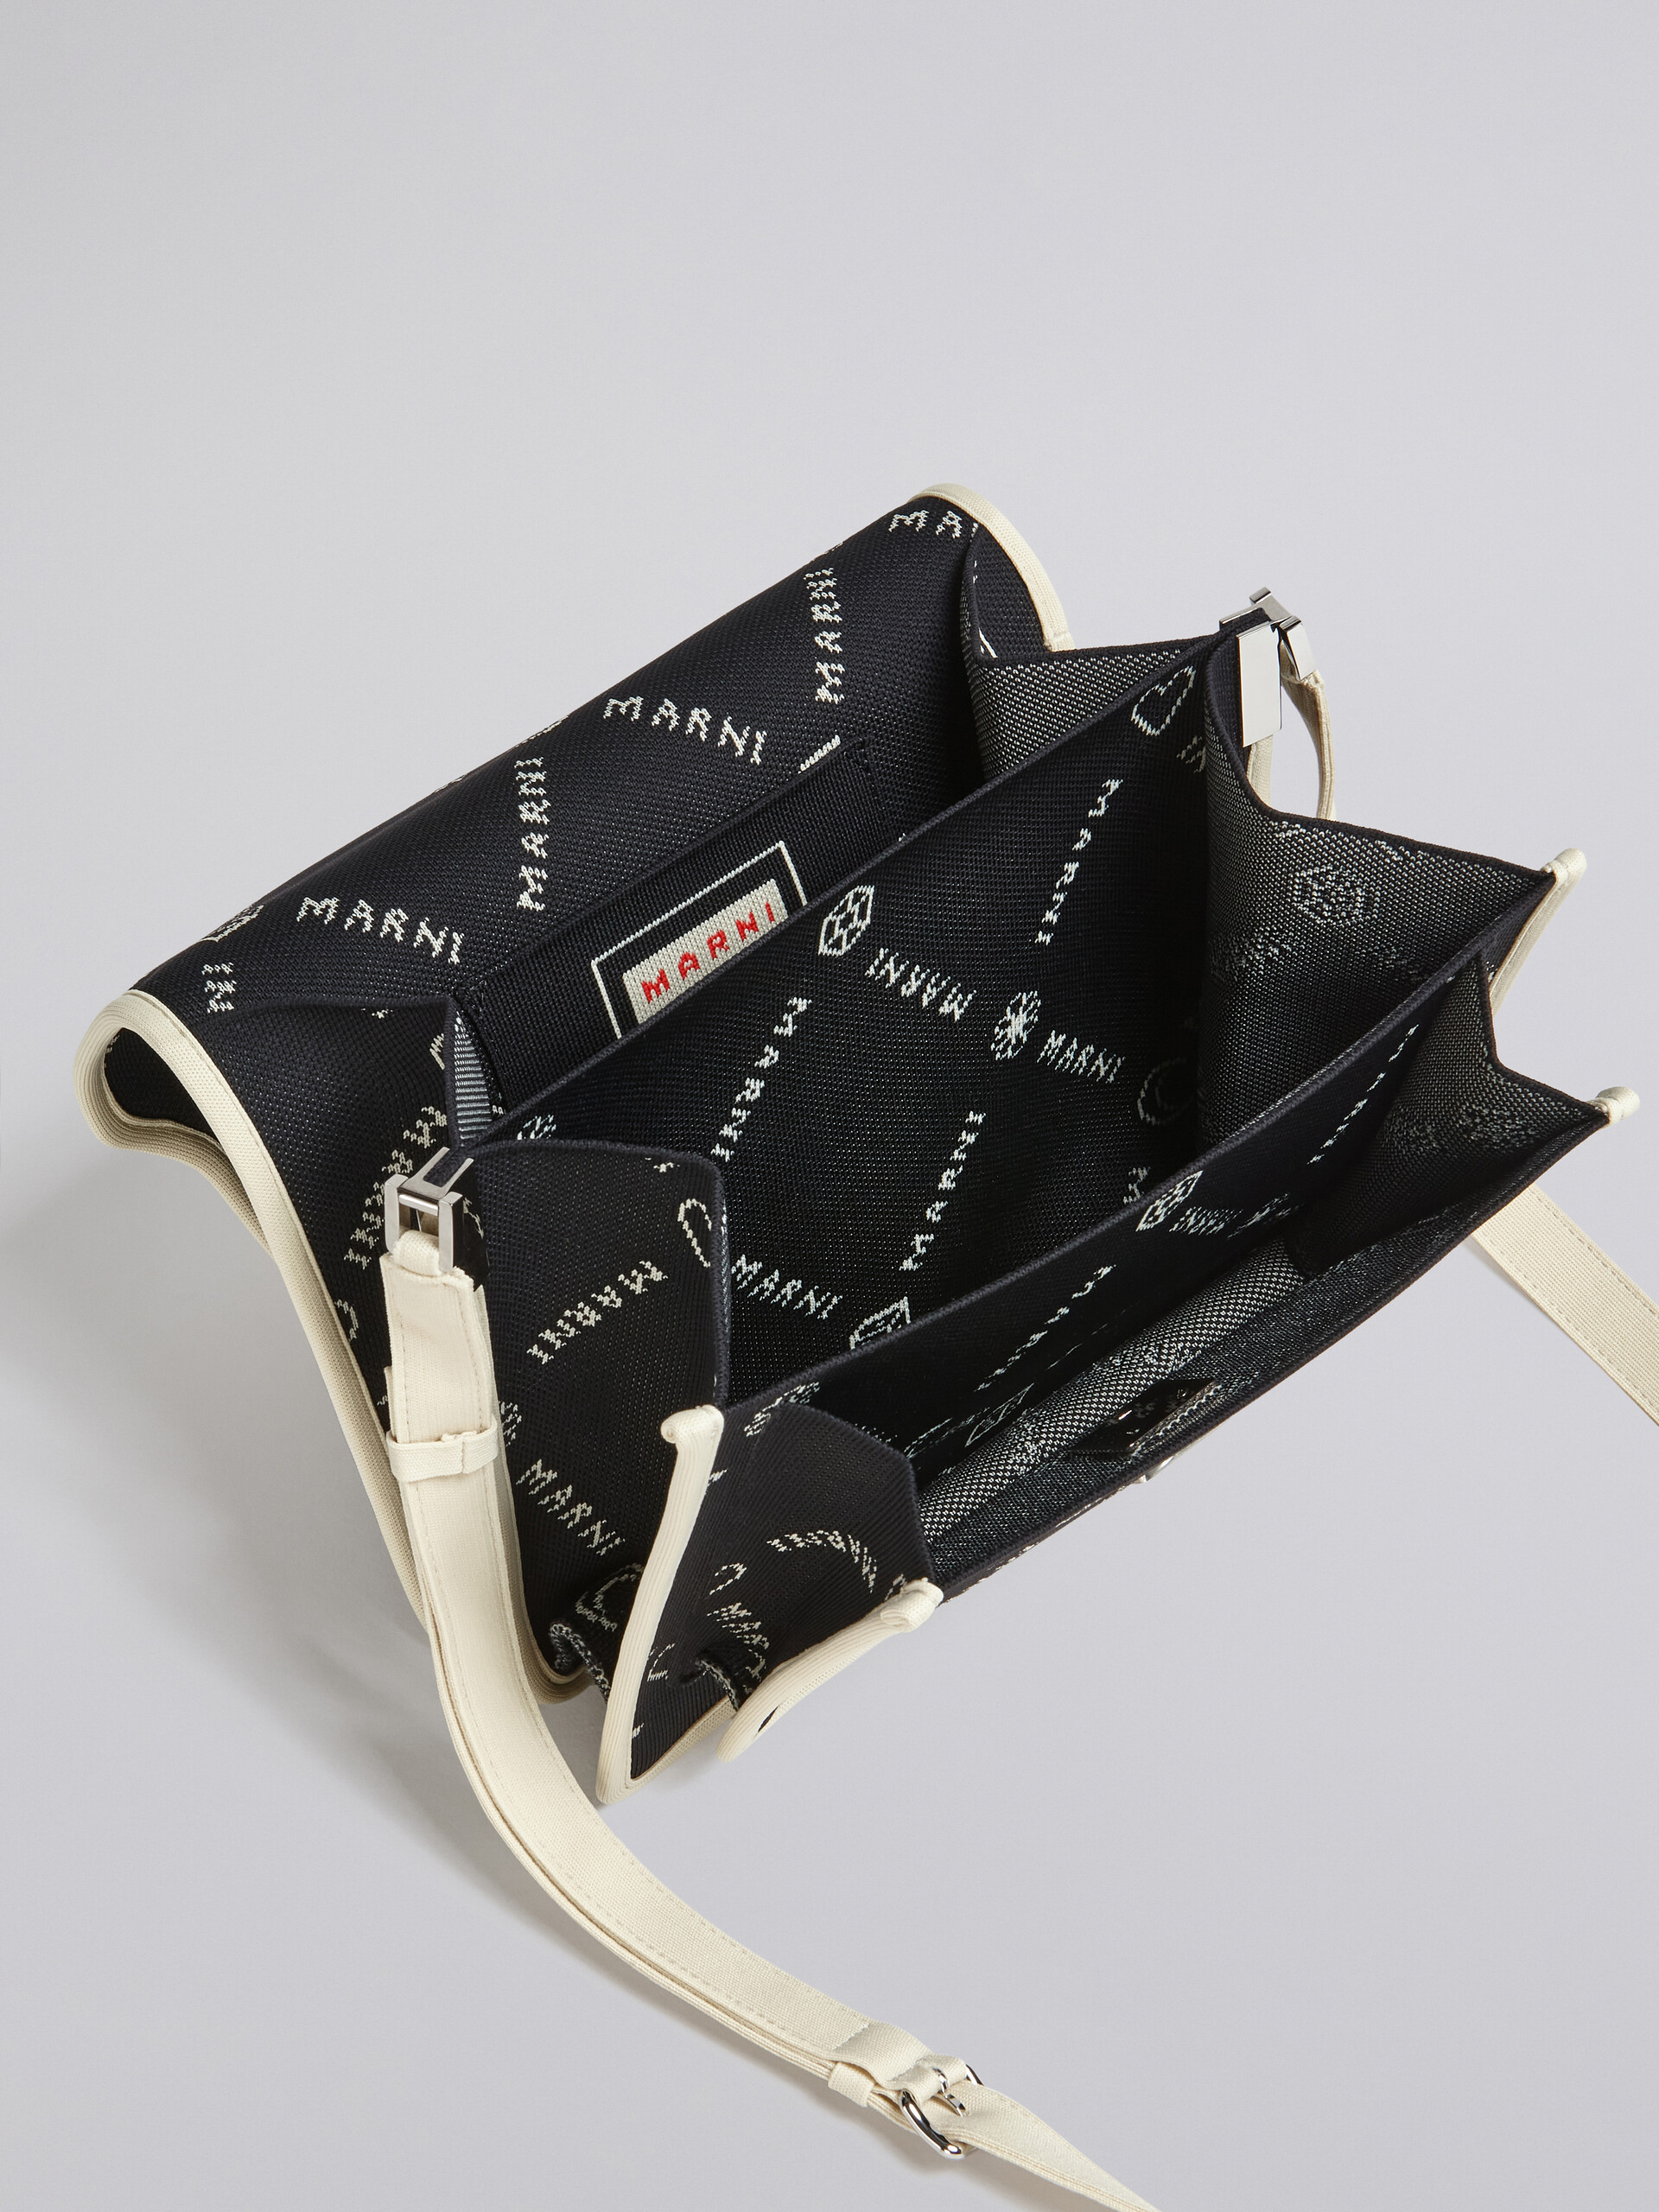 TRUNK SOFT large bag in black Marnigram jacquard - Shoulder Bag - Image 3